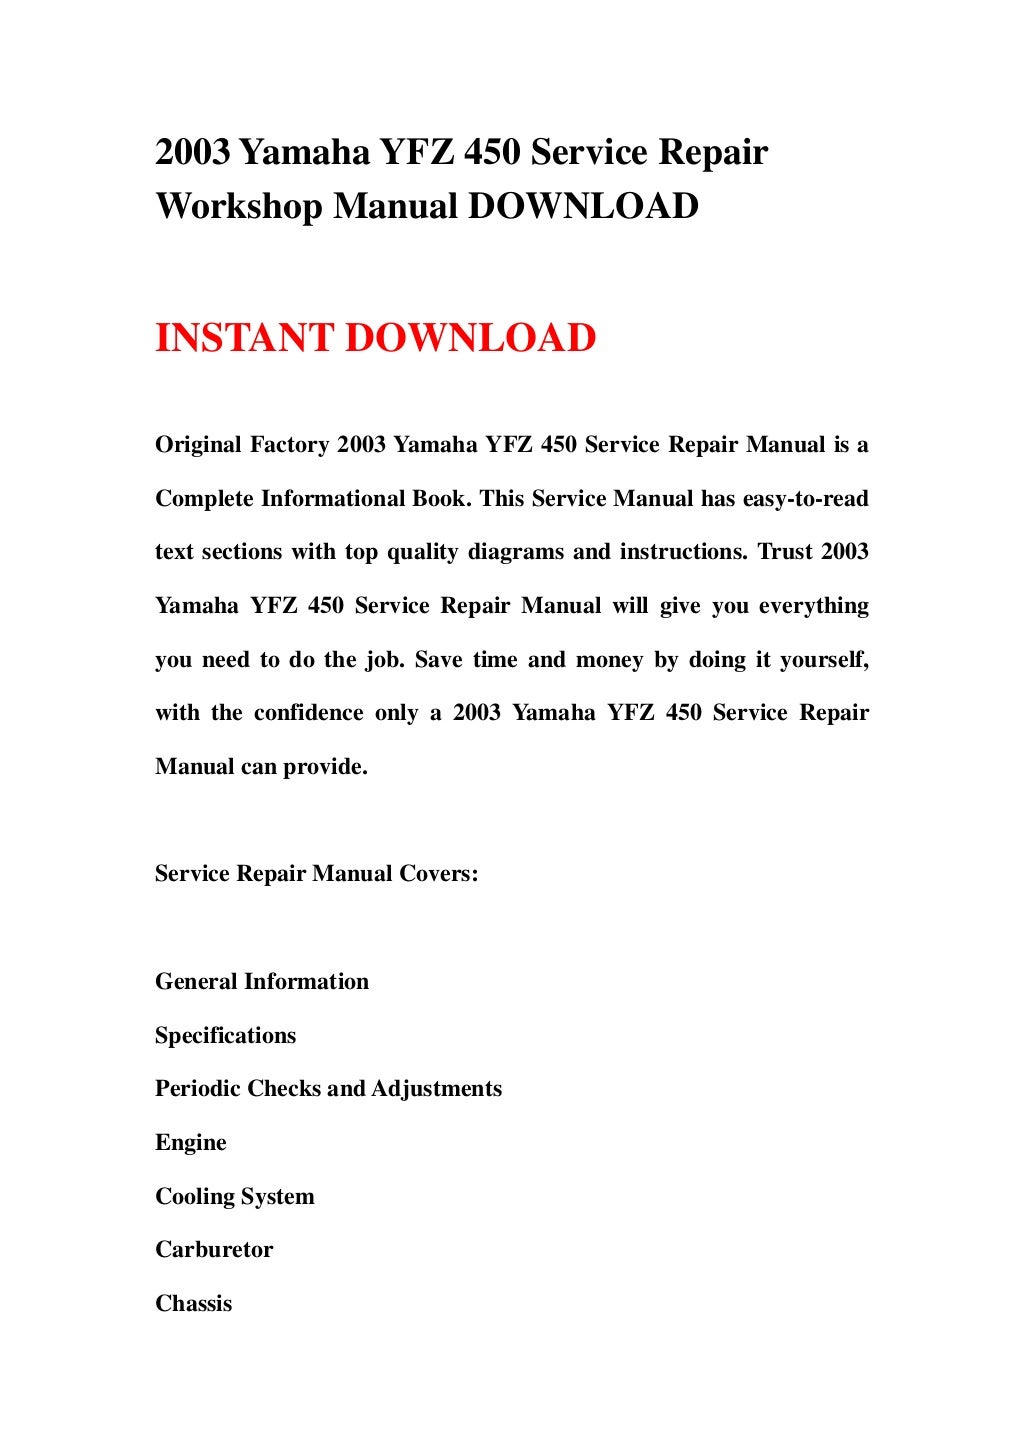 2003 yamaha yfz 450 service repair workshop manual download